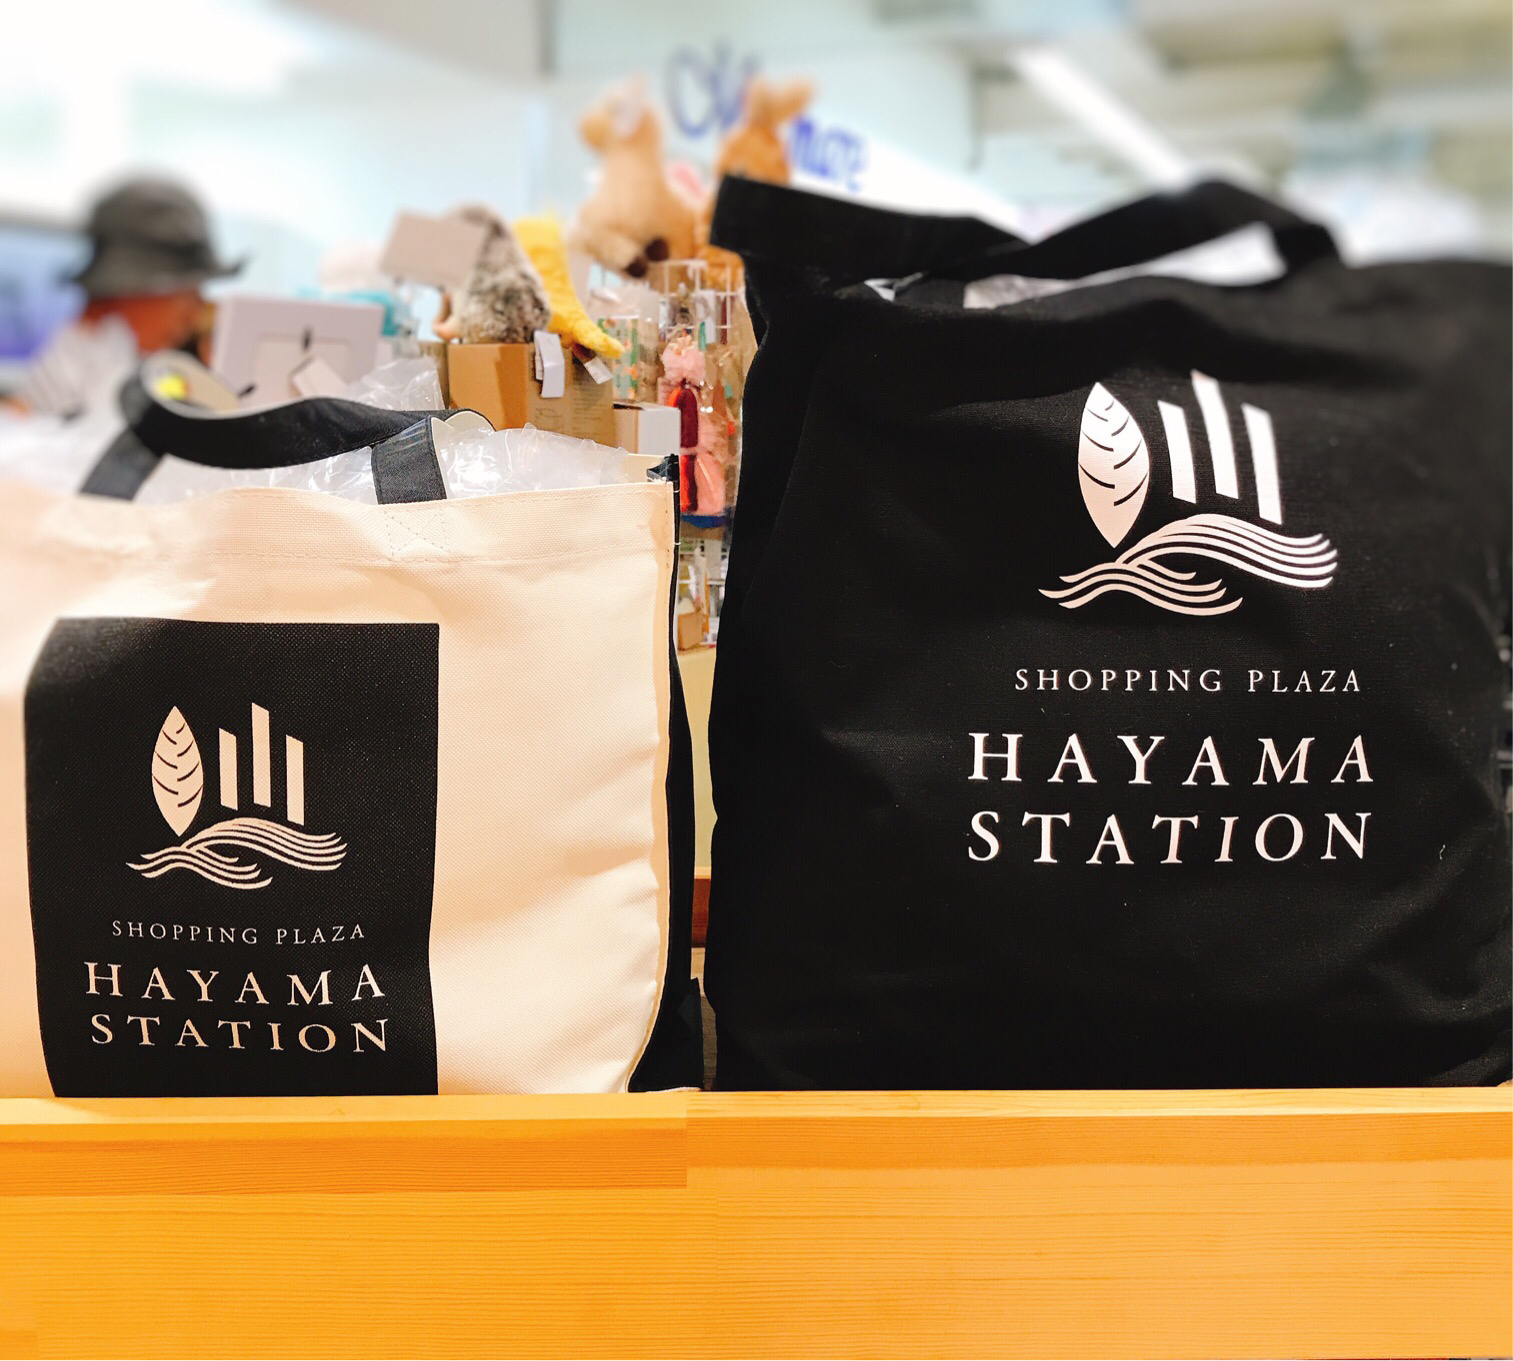 HAYAMA STATIONのオリジナルエコバッグ。たくさん買い物をしても安心。